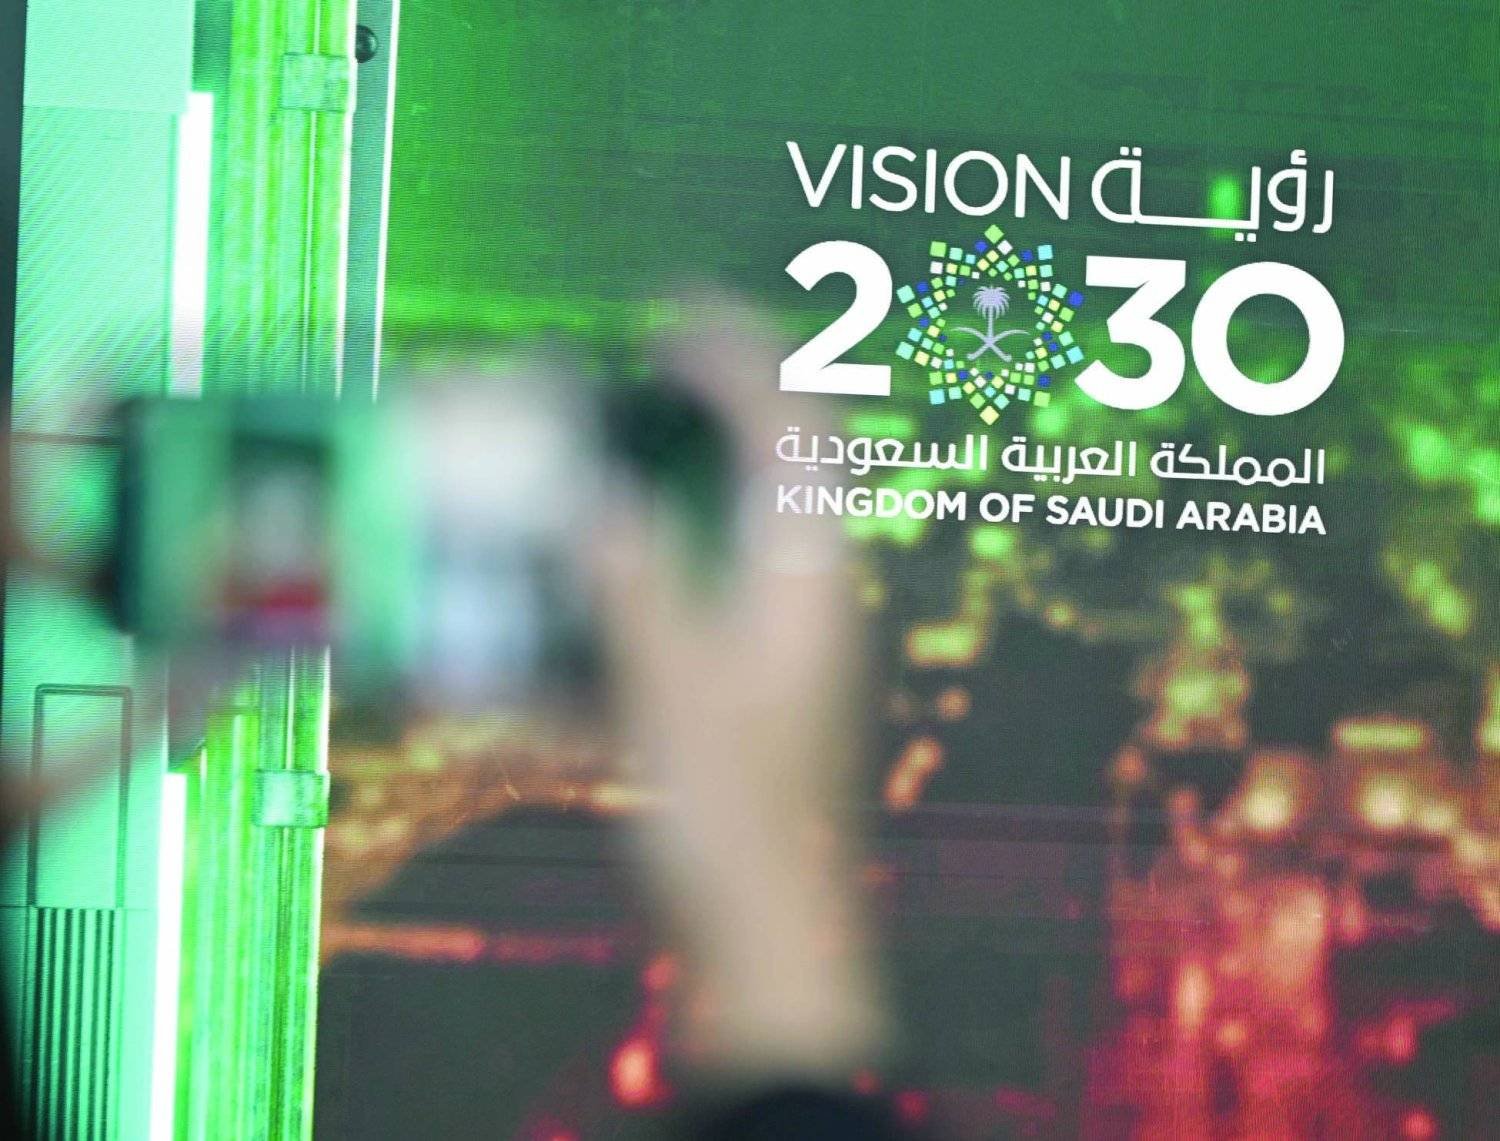 تقرير مرحلي: تقدم الرؤية السعودية 2030 مع 87% من المبادرات على المسار الصحيح أو منجزة